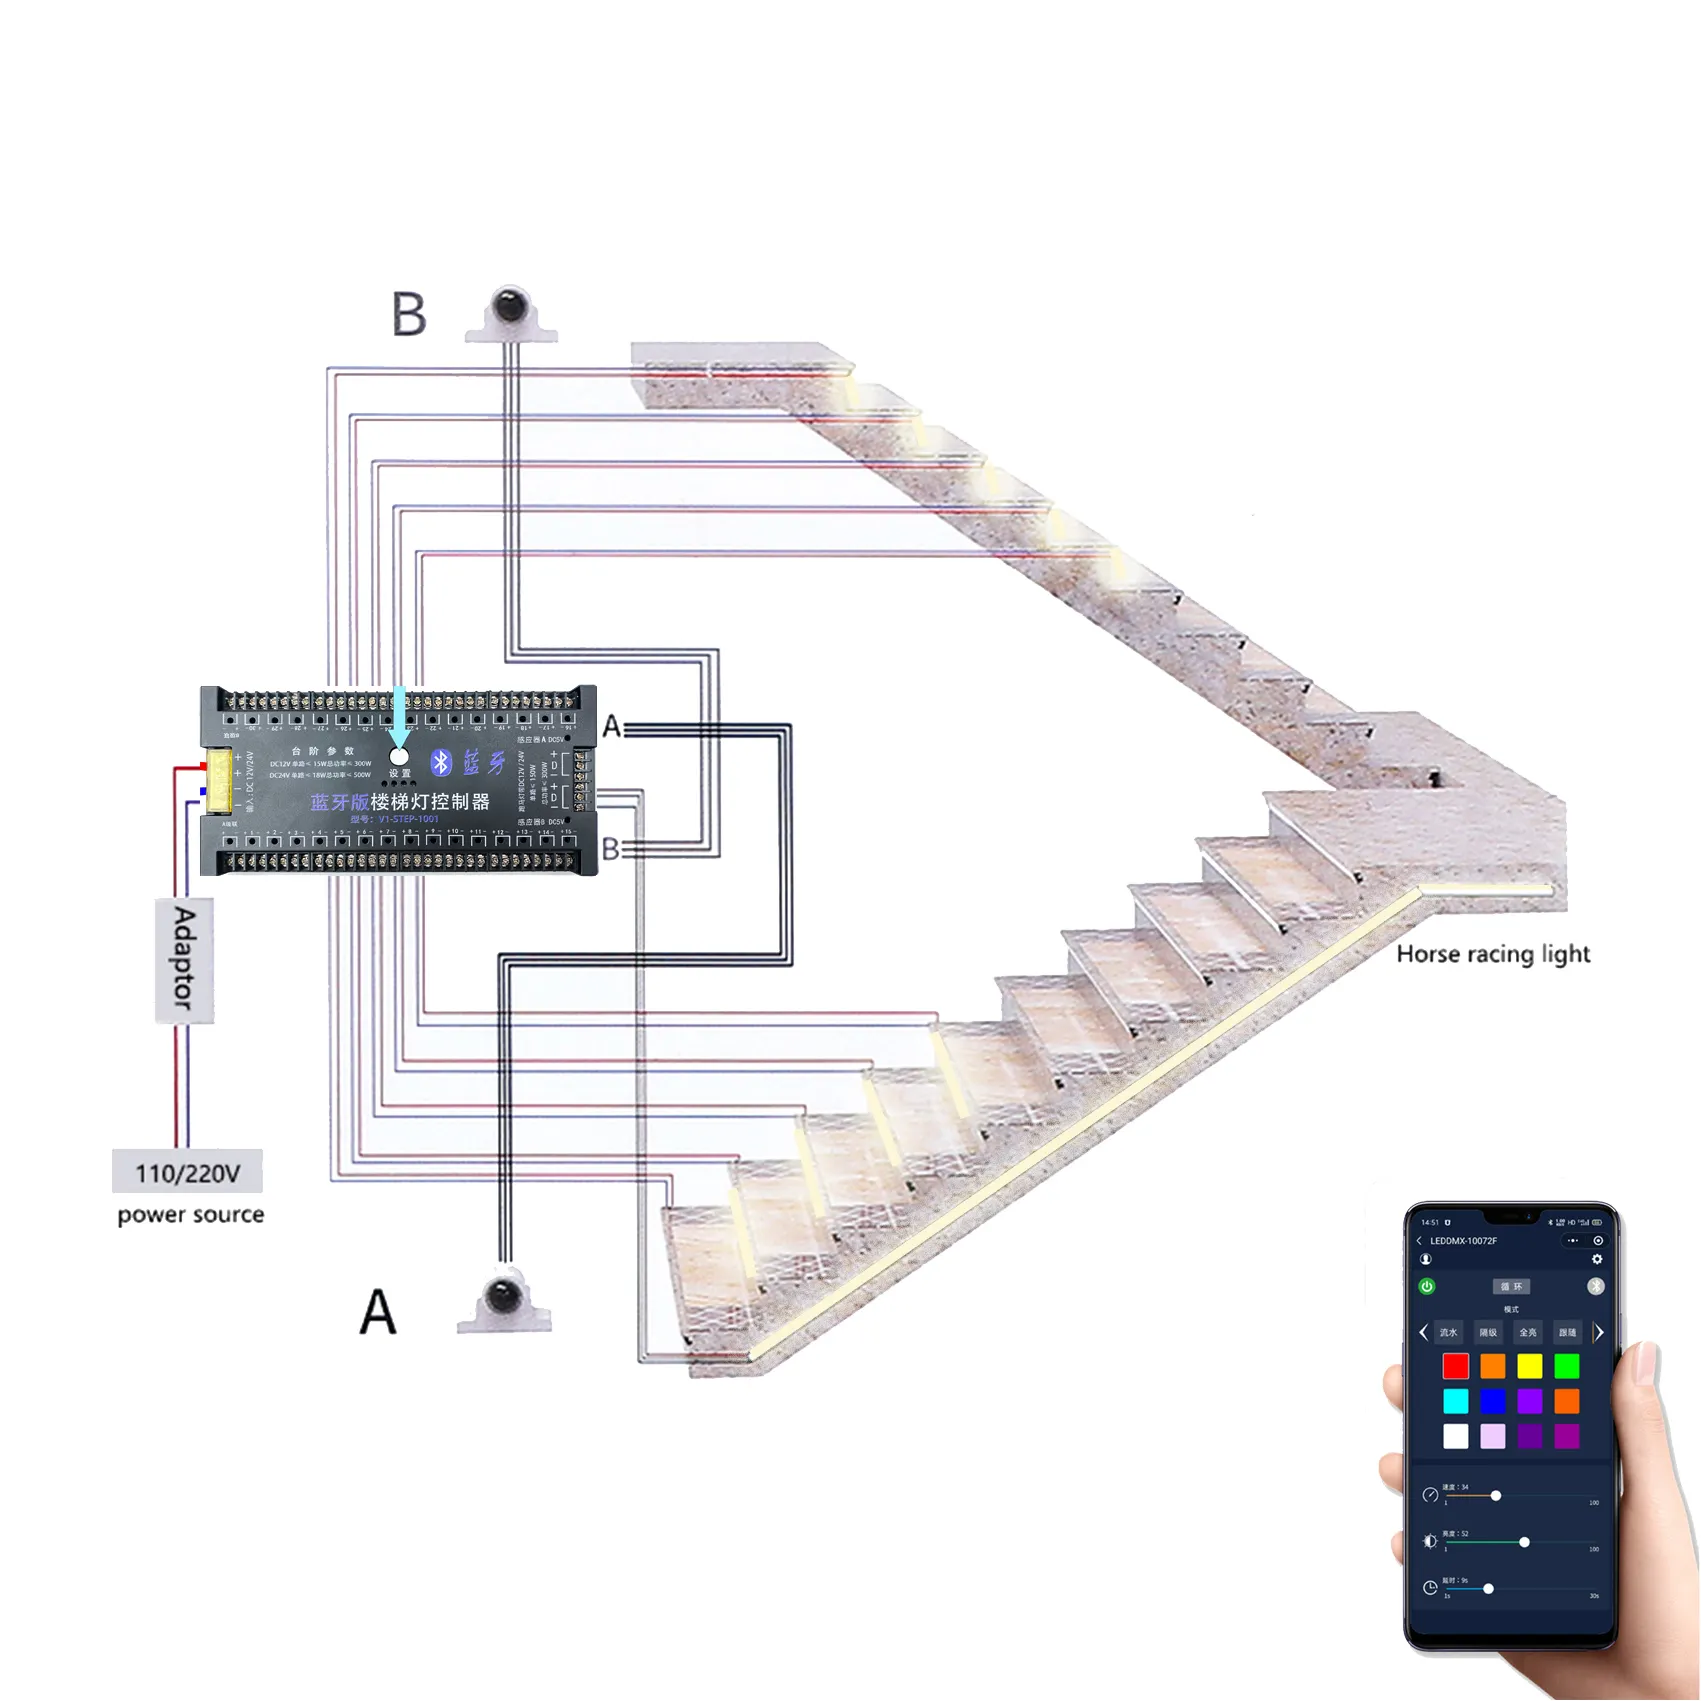 חיישן תנועת led מדרגות תאורה מערכת חכם stairway עם 20 צעדים טלפון בקרת מדרגות אוטומטי led מדרגות אור